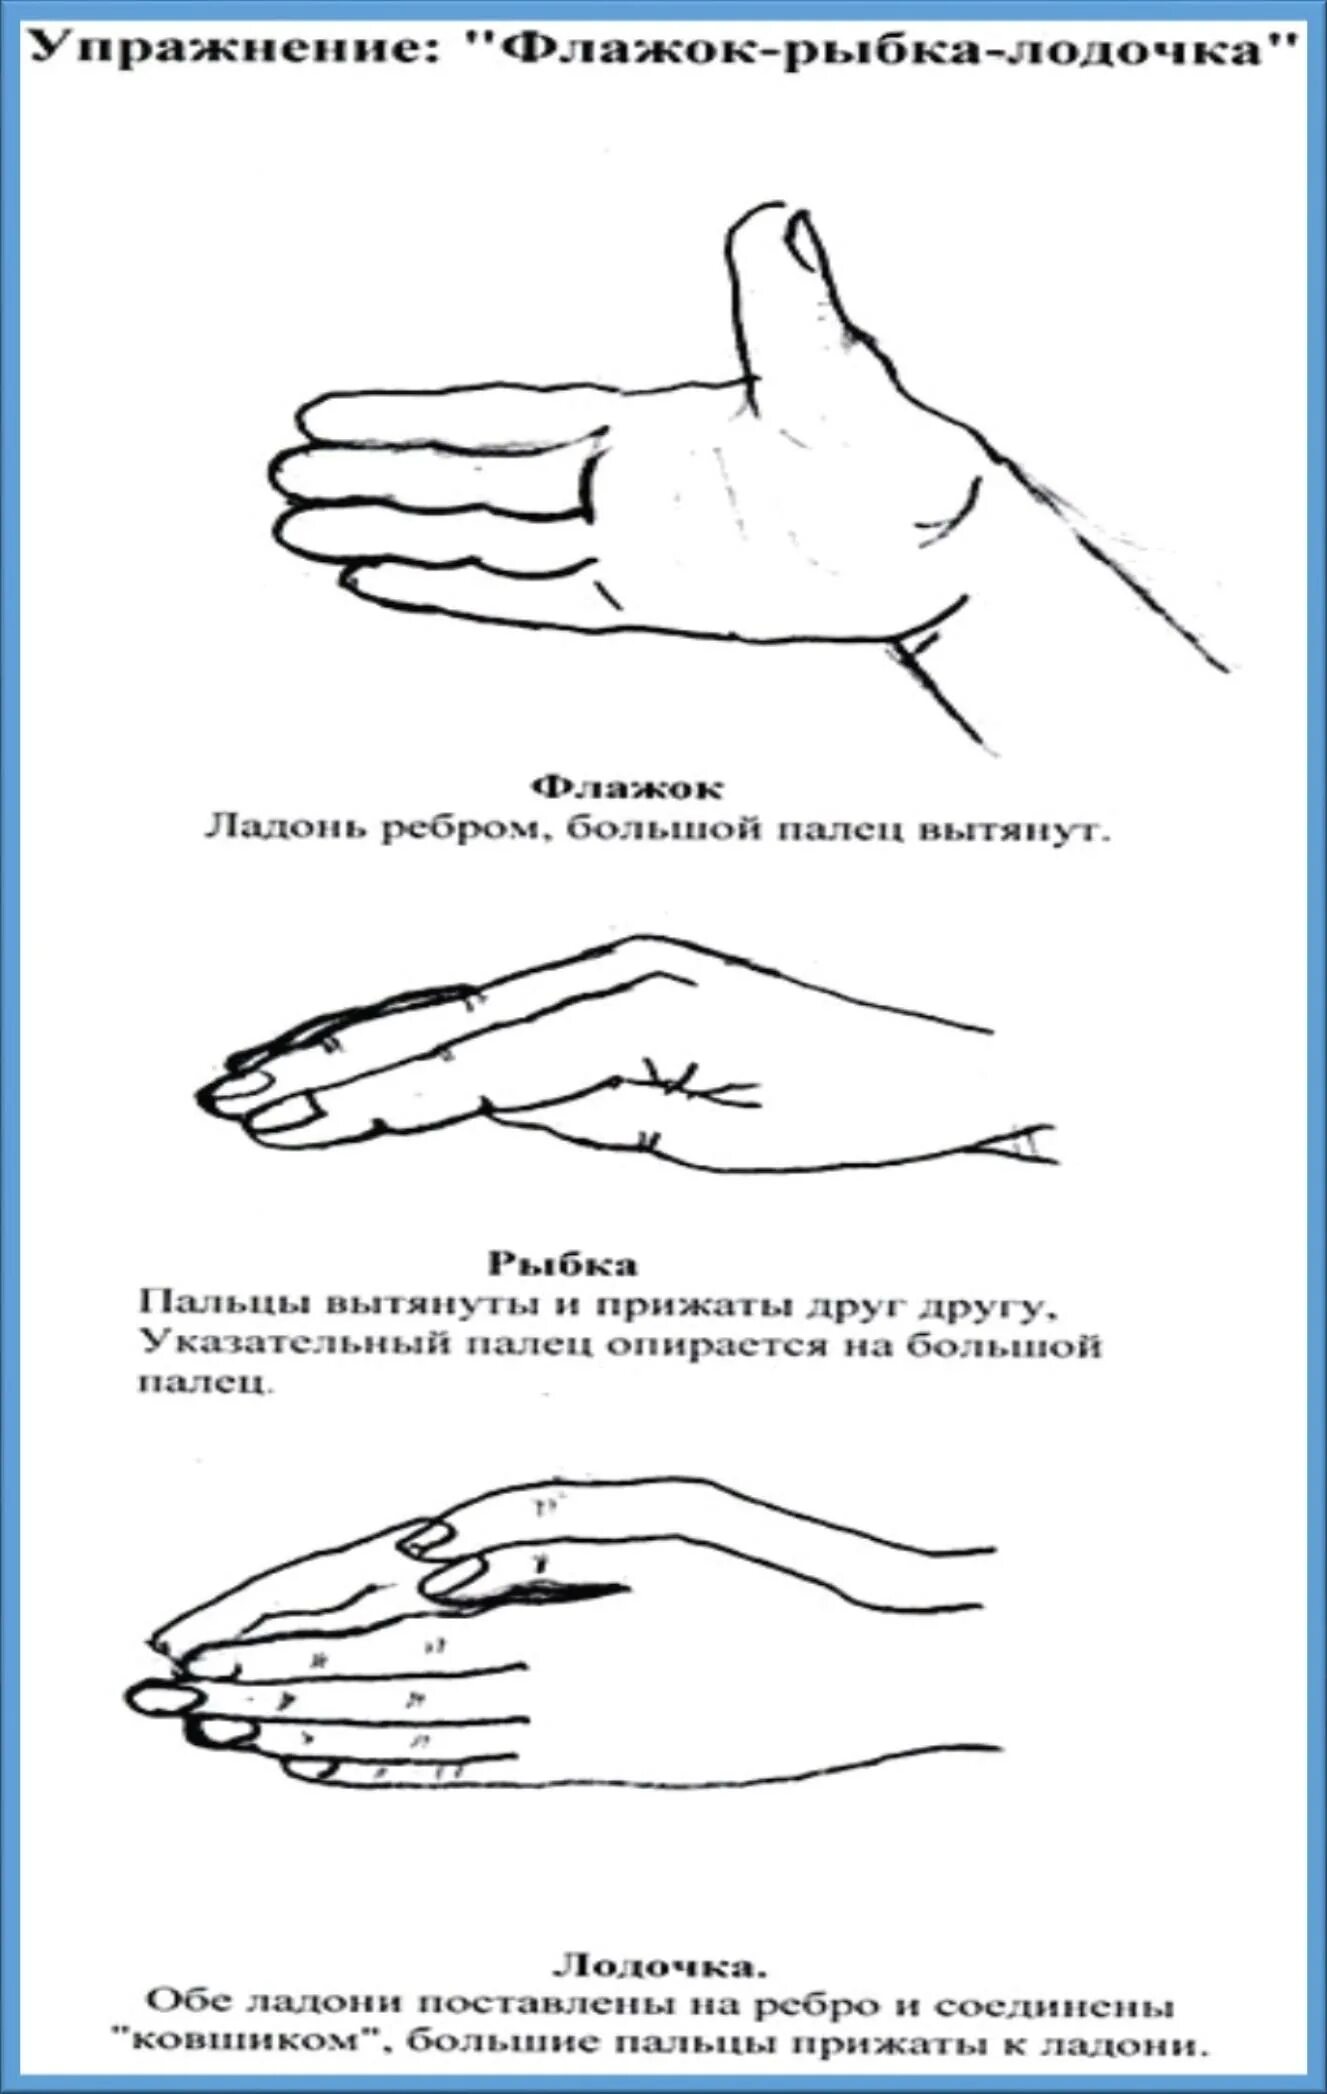 Упражнения пальцев для мозга. Схемы кинезиологических упражнений для дошкольников. Кинезиологические пальчиковые упражнения для дошкольников. Упражнения для развития мозга для детей 5 лет. Пальчиковые нейропсихологические упражнения для детей.